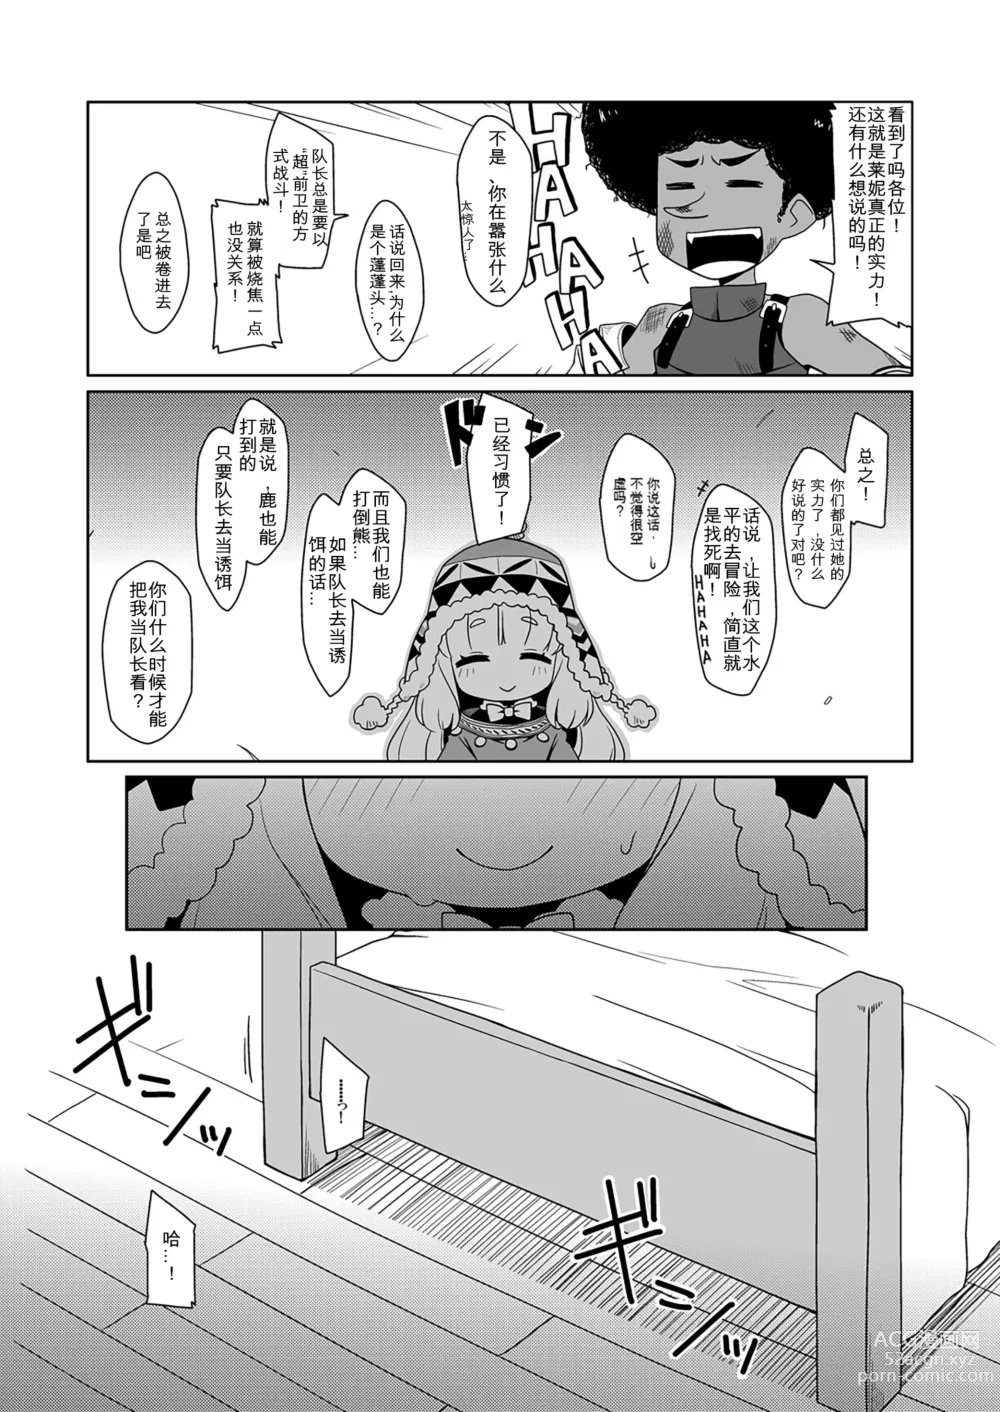 Page 8 of doujinshi Runemaster wa Dekiru Ko.